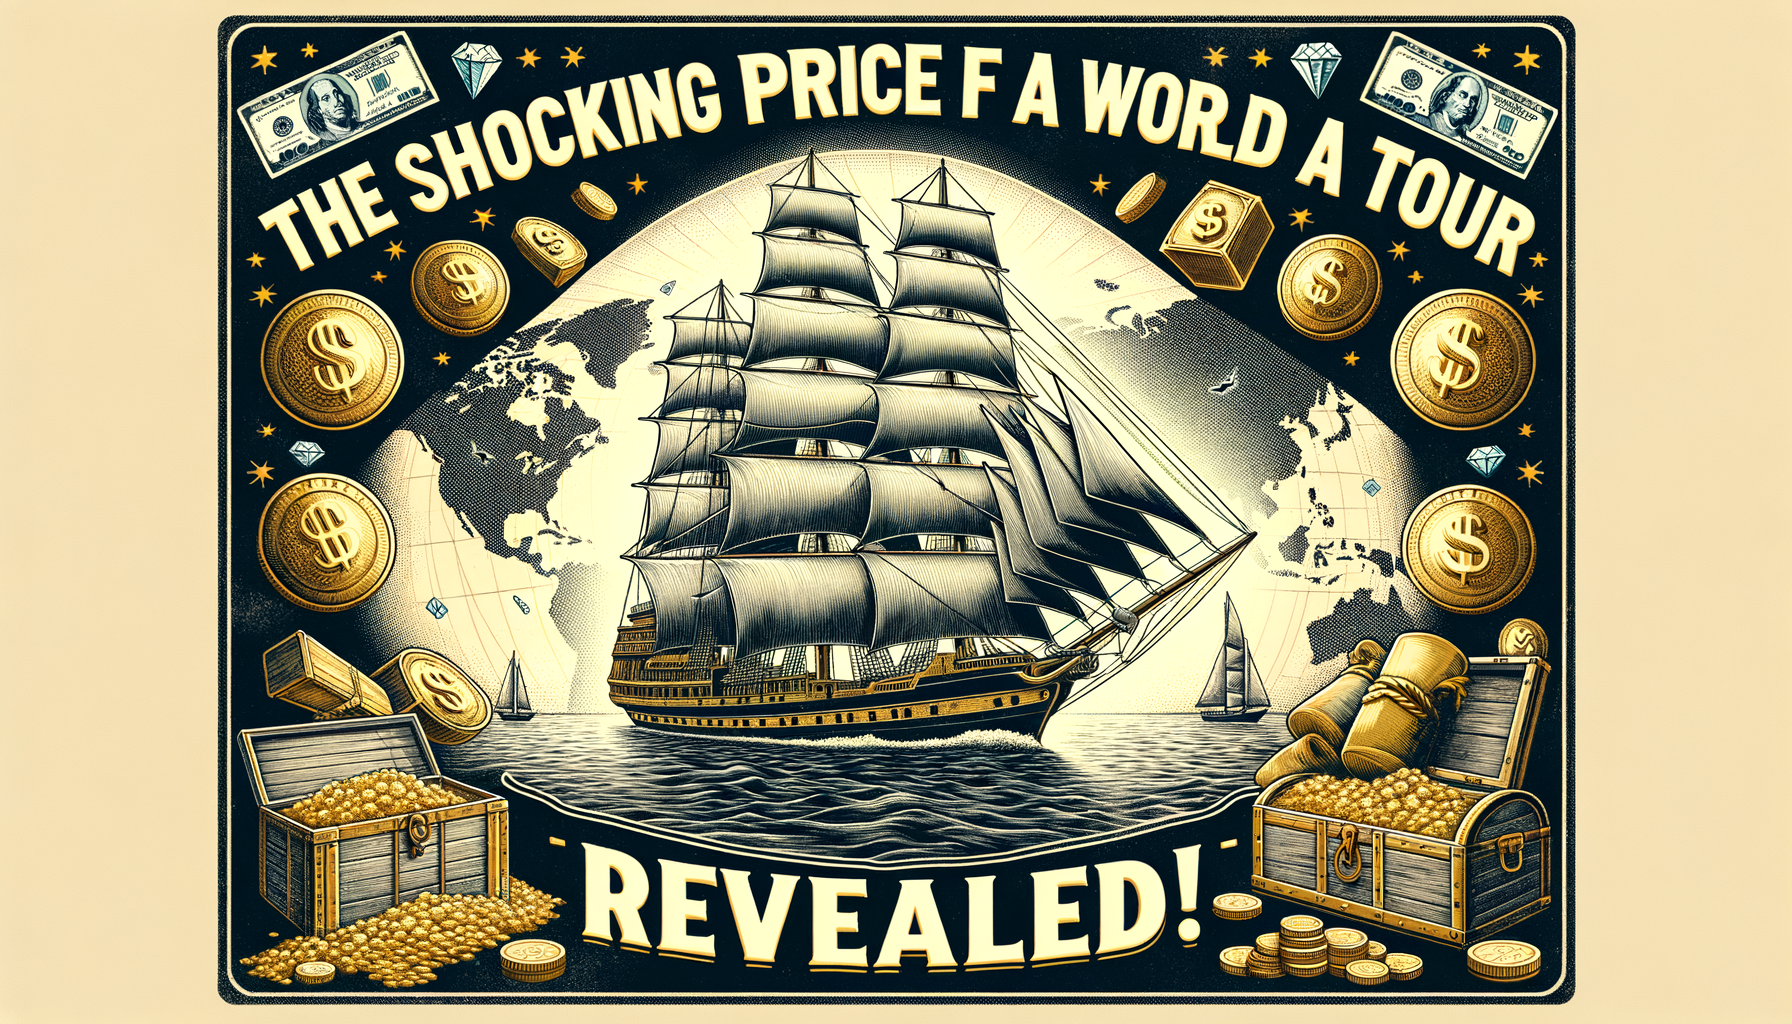 découvrez le véritable coût d'un tour du monde en bateau et soyez choqué par le prix ! ne manquez pas cette incroyable révélation sur le coût réel d'un tour du monde en bateau.